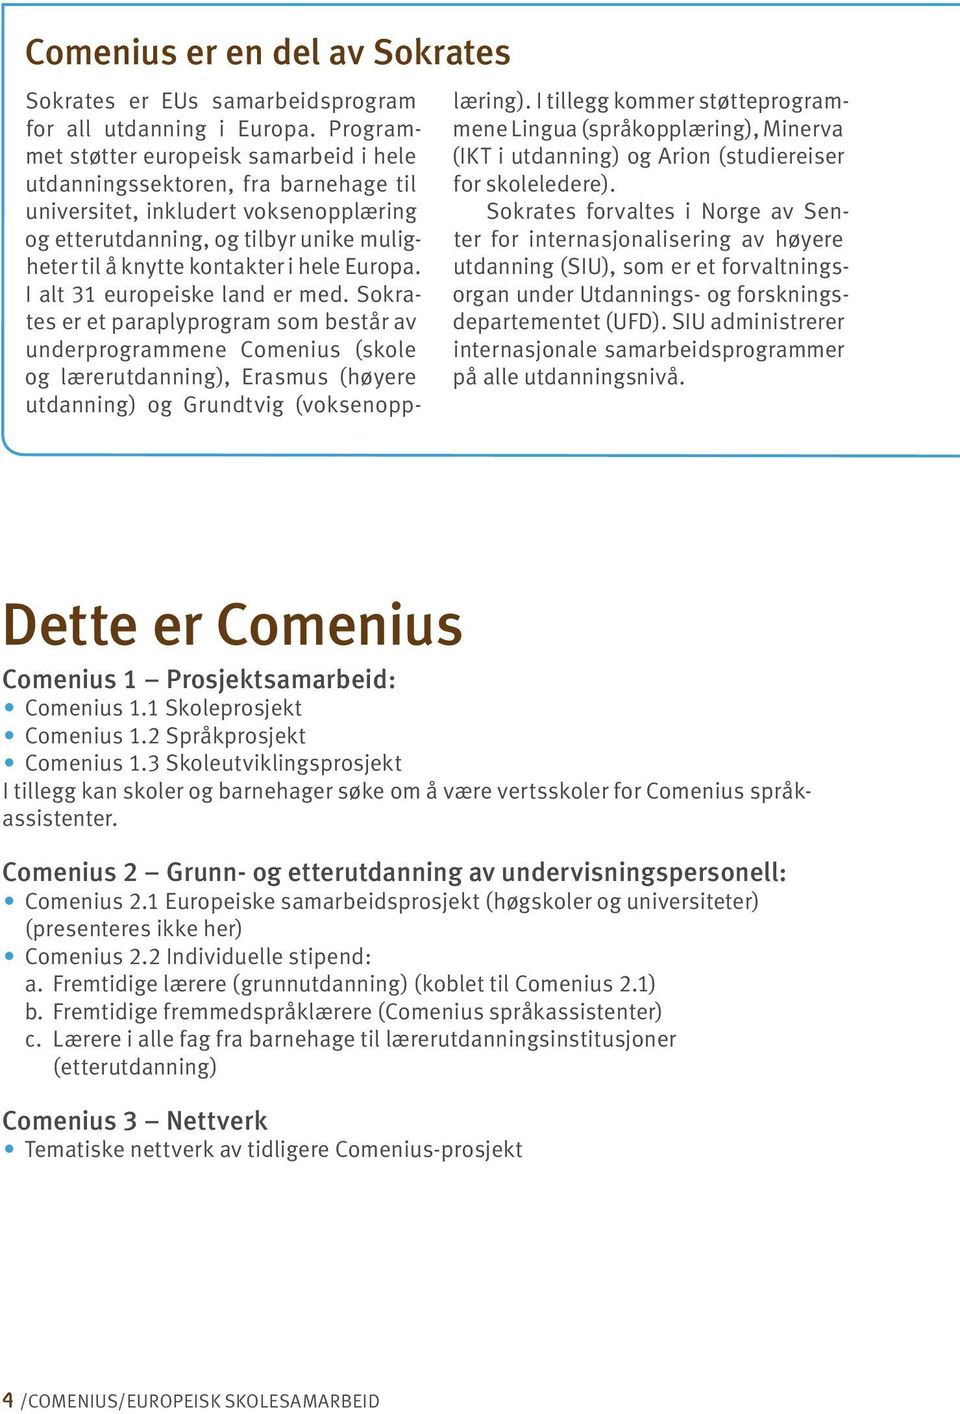 Europa. I alt 31 europeiske land er med. Sokrates er et paraplyprogram som består av underprogrammene Comenius (skole og lærerutdanning), Erasmus (høyere utdanning) og Grundtvig (voksenopplæring).